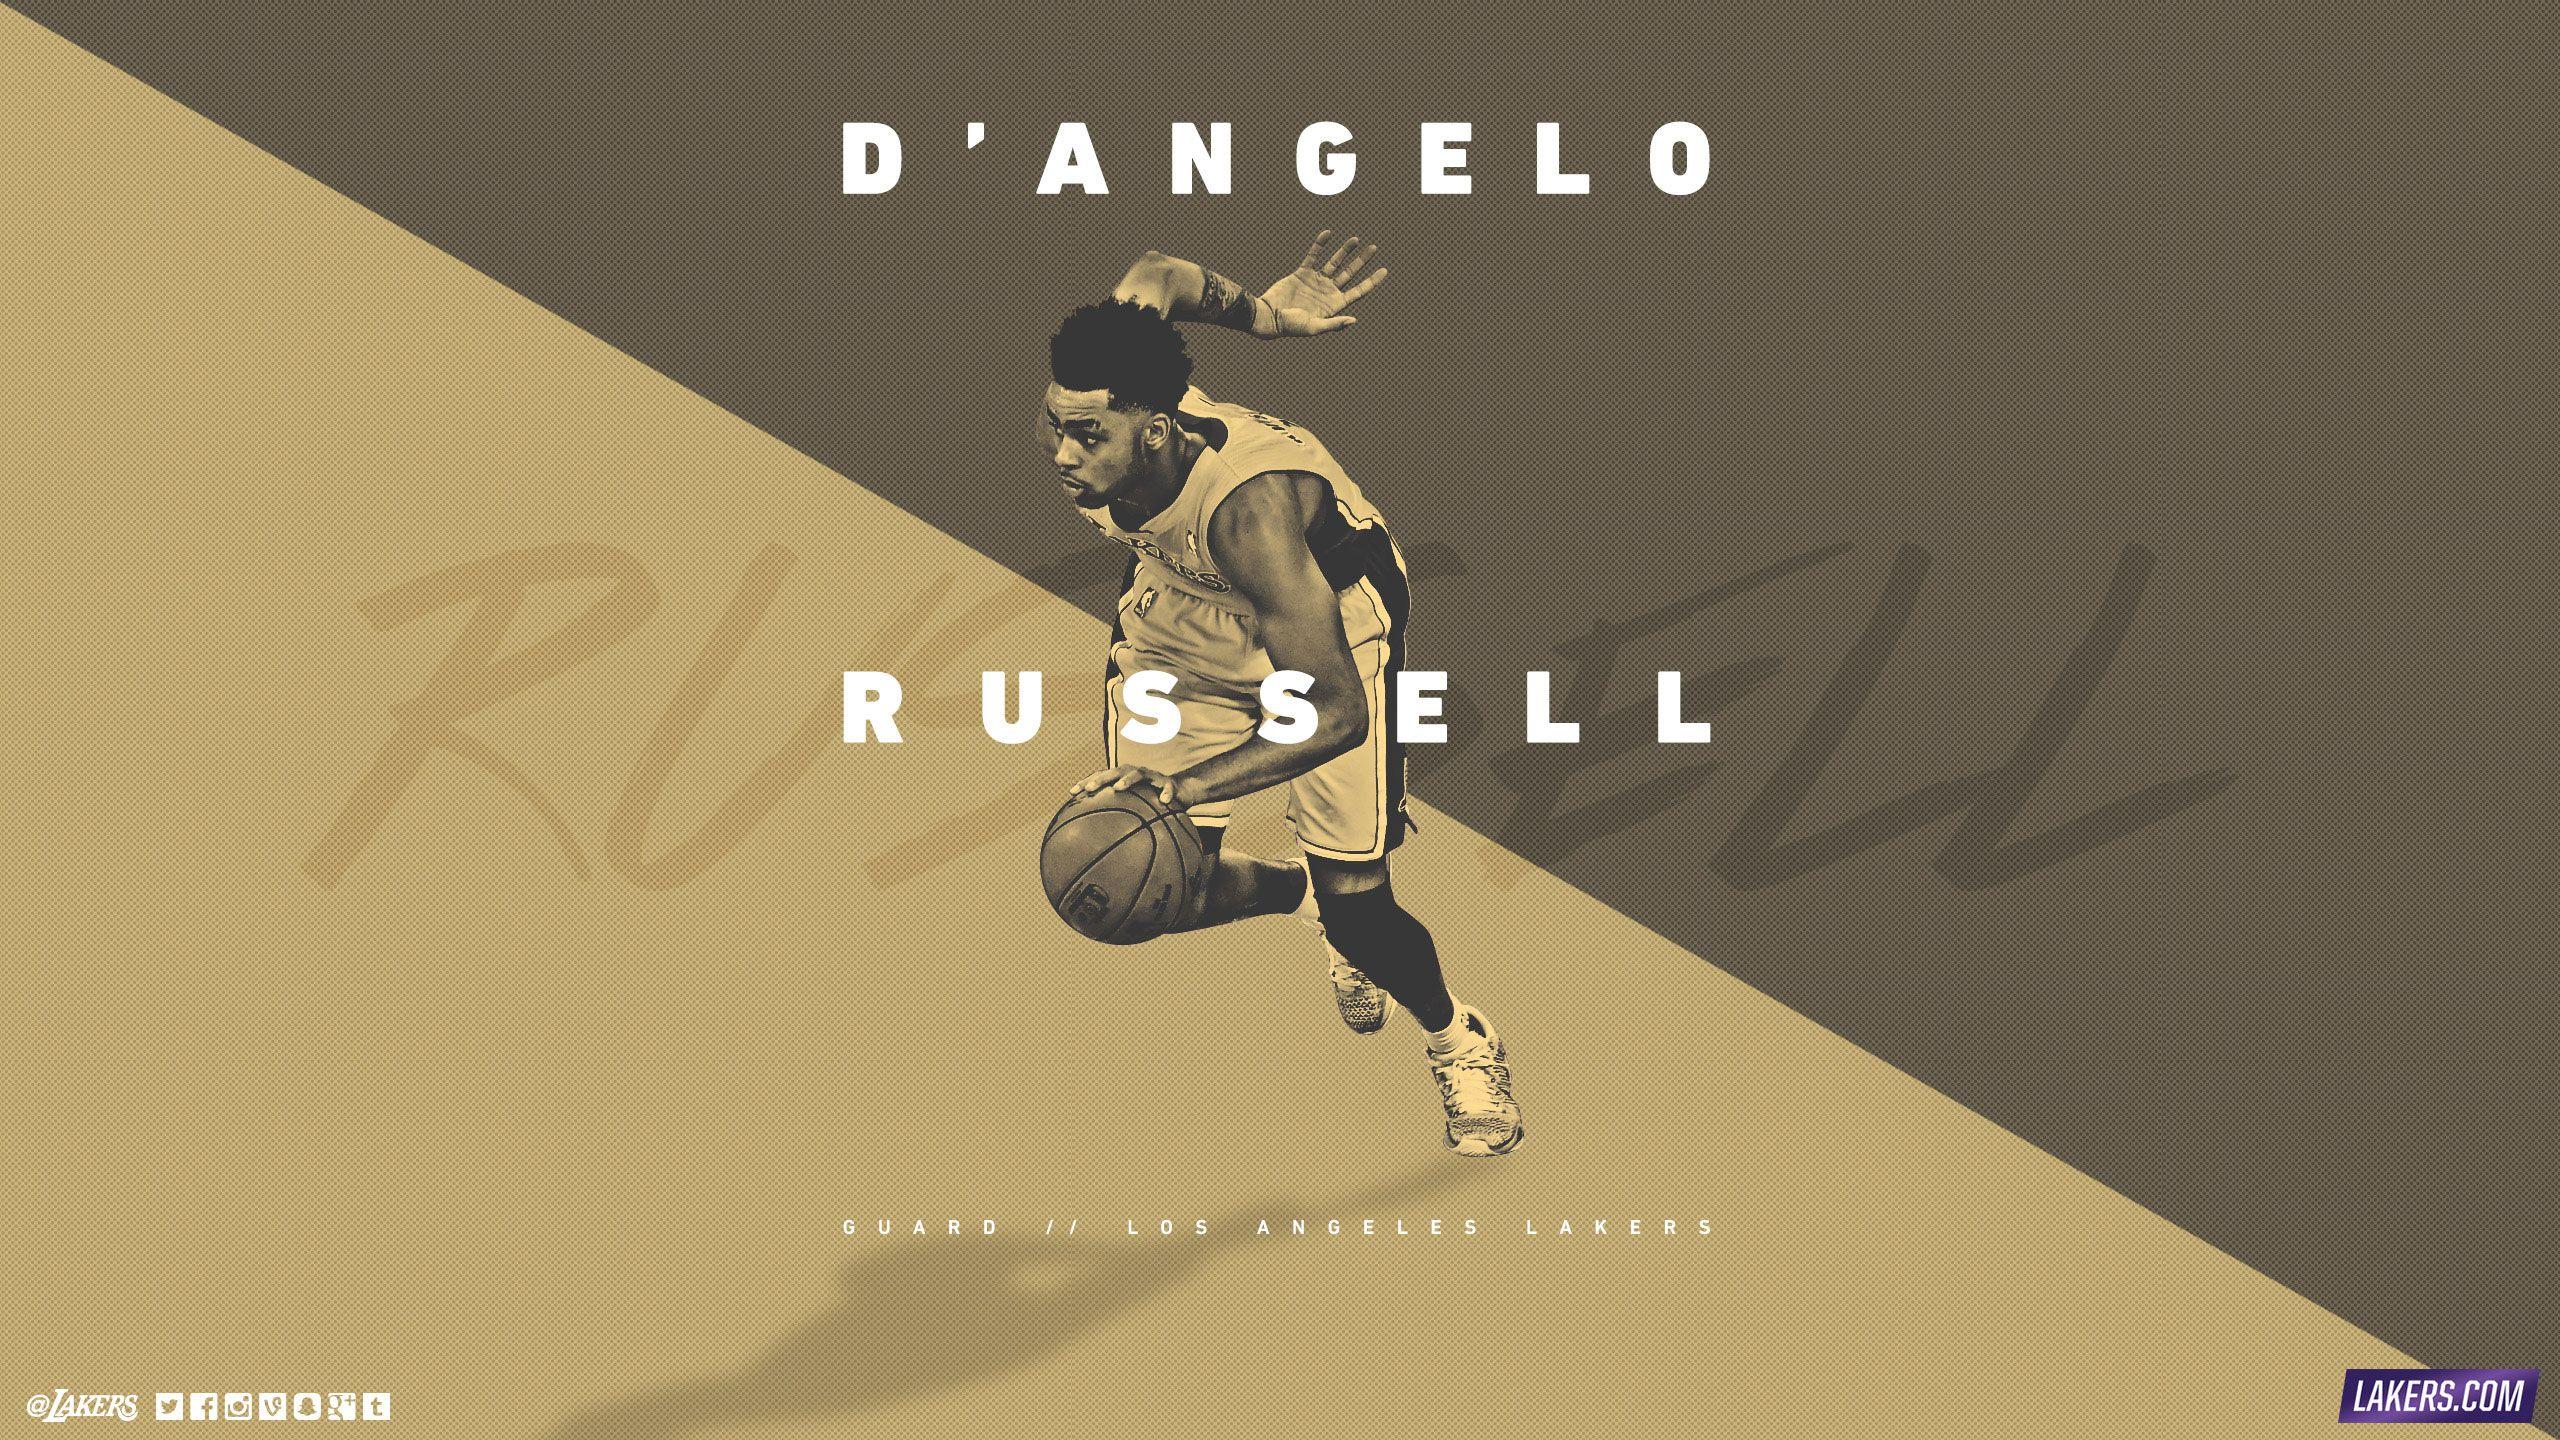 D'Angelo Russell Wallpaper. Basketball Wallpaper at